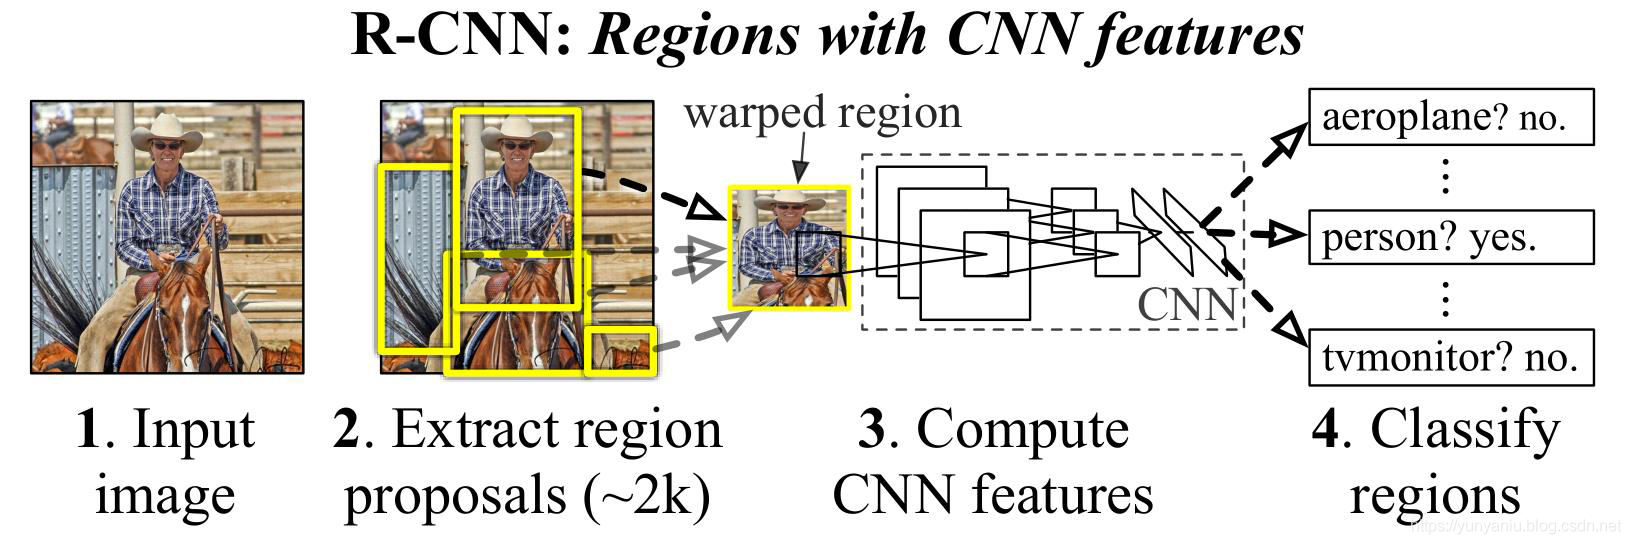 DL之R-CNN：R-CNN算法的简介(论文介绍)、架构详解、案例应用等配图集合之详细攻略(二)